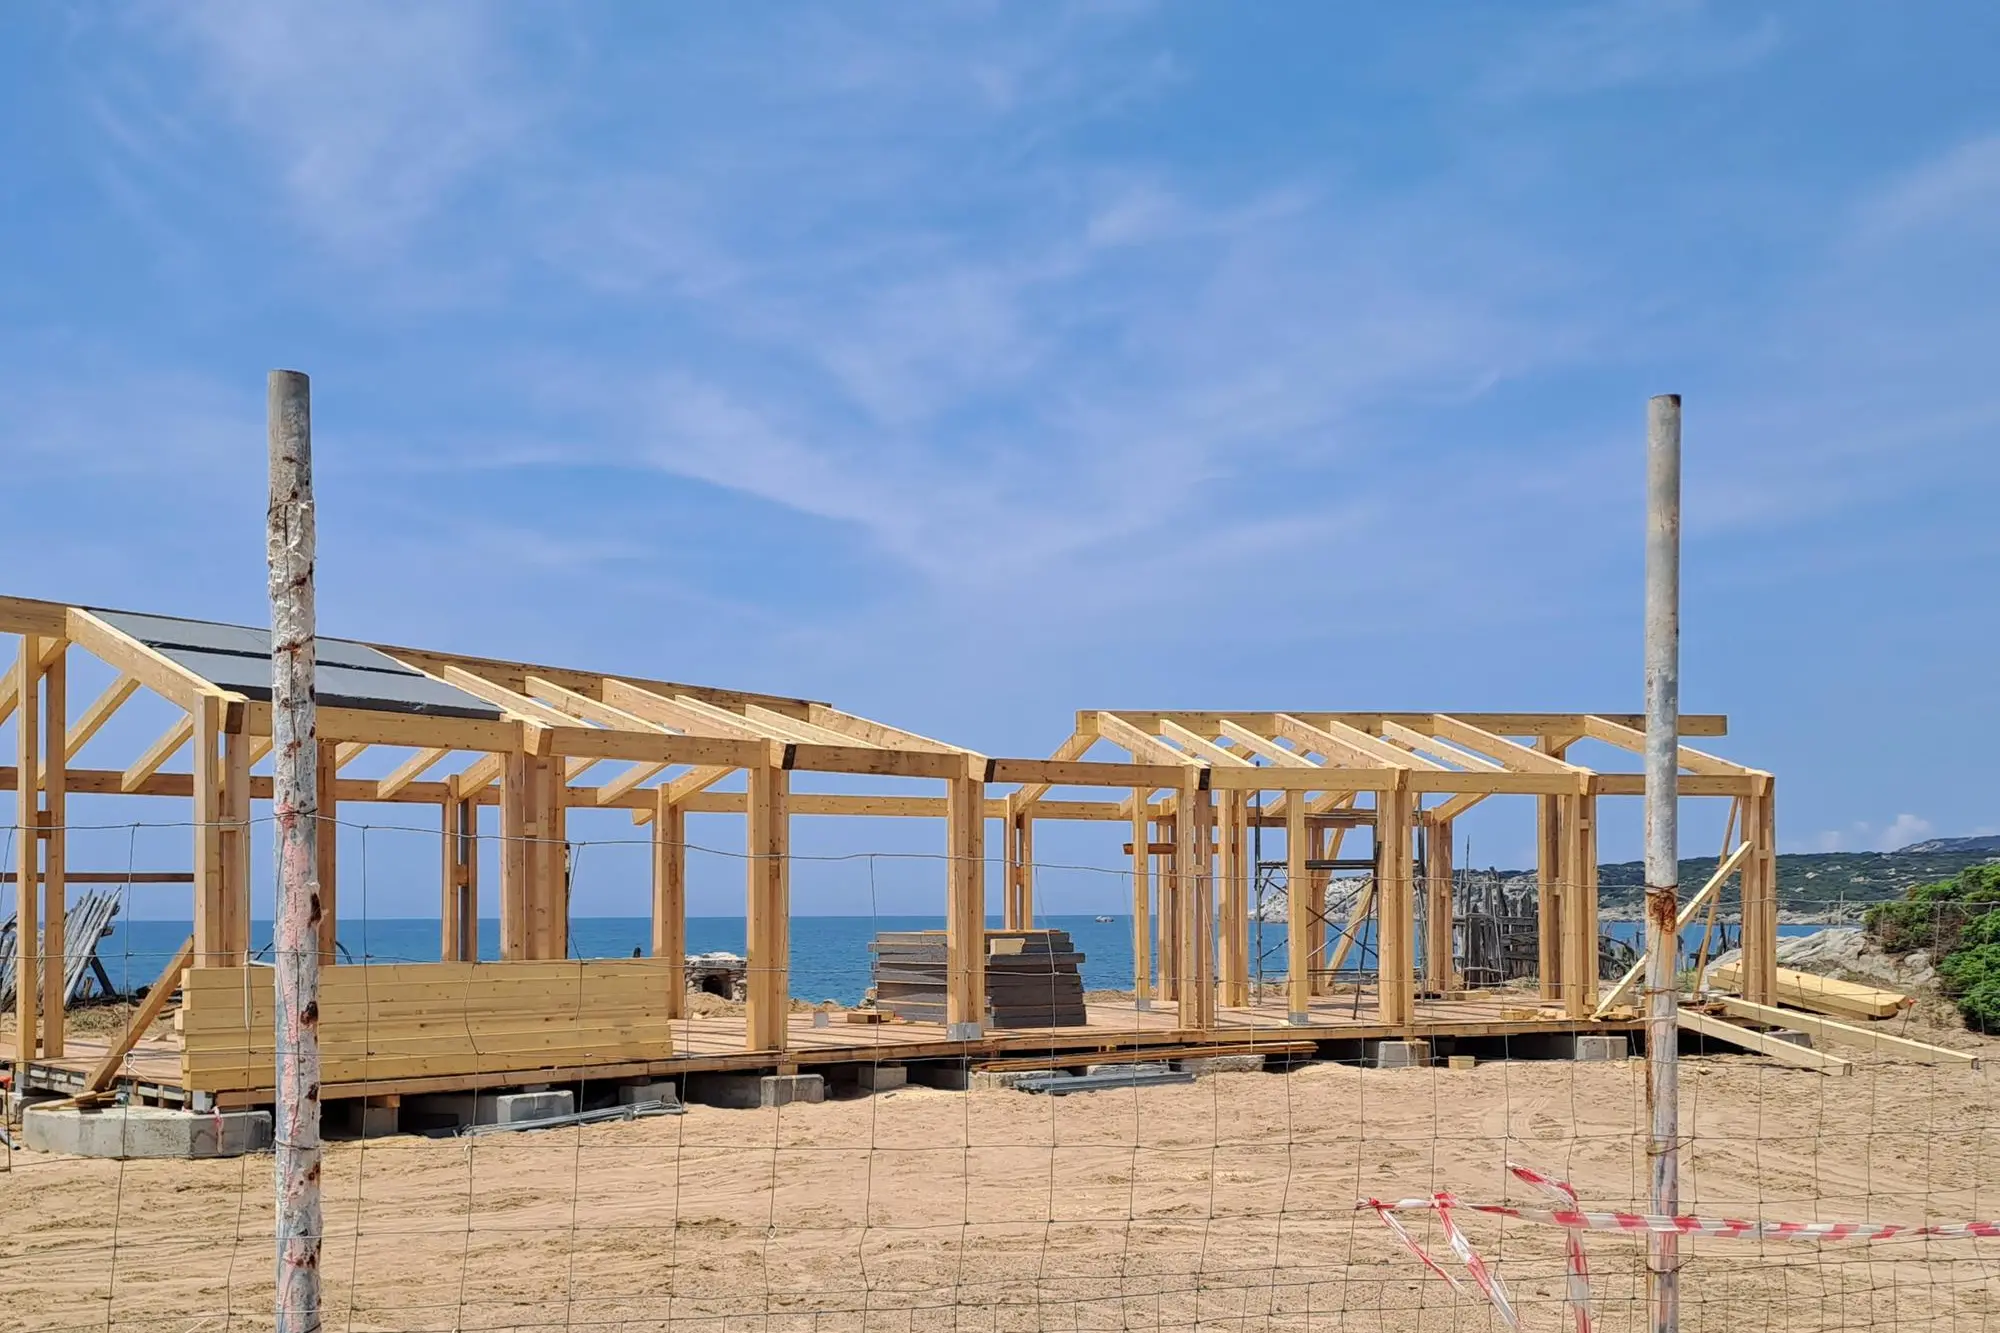 La struttura in spiaggia ad Aglientu (foto inviata dai lettori)